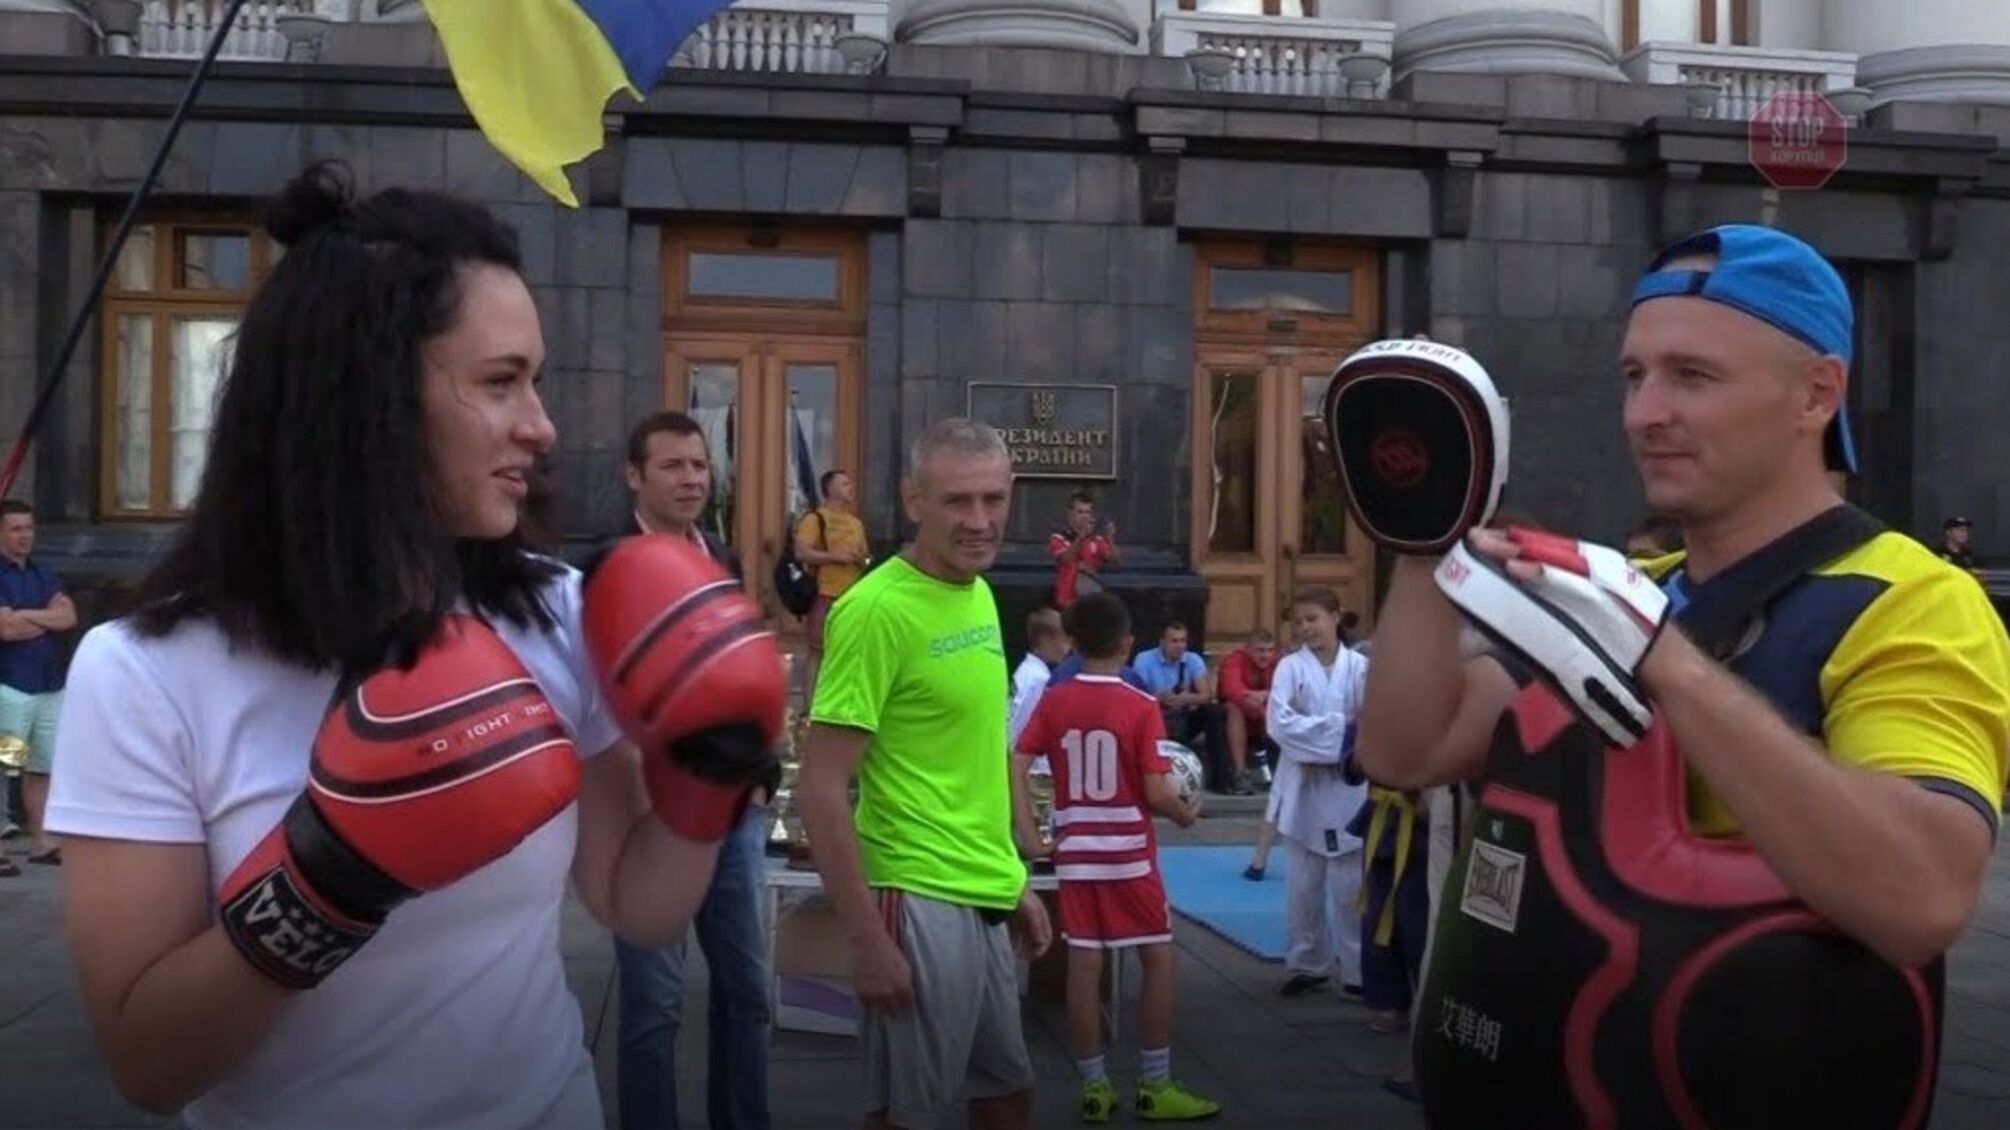 Масштабне тренування під АП: у Києві відбувся флешмоб спортсменів, які виступають проти рейдерства СК 'Схід' (фото, відео)